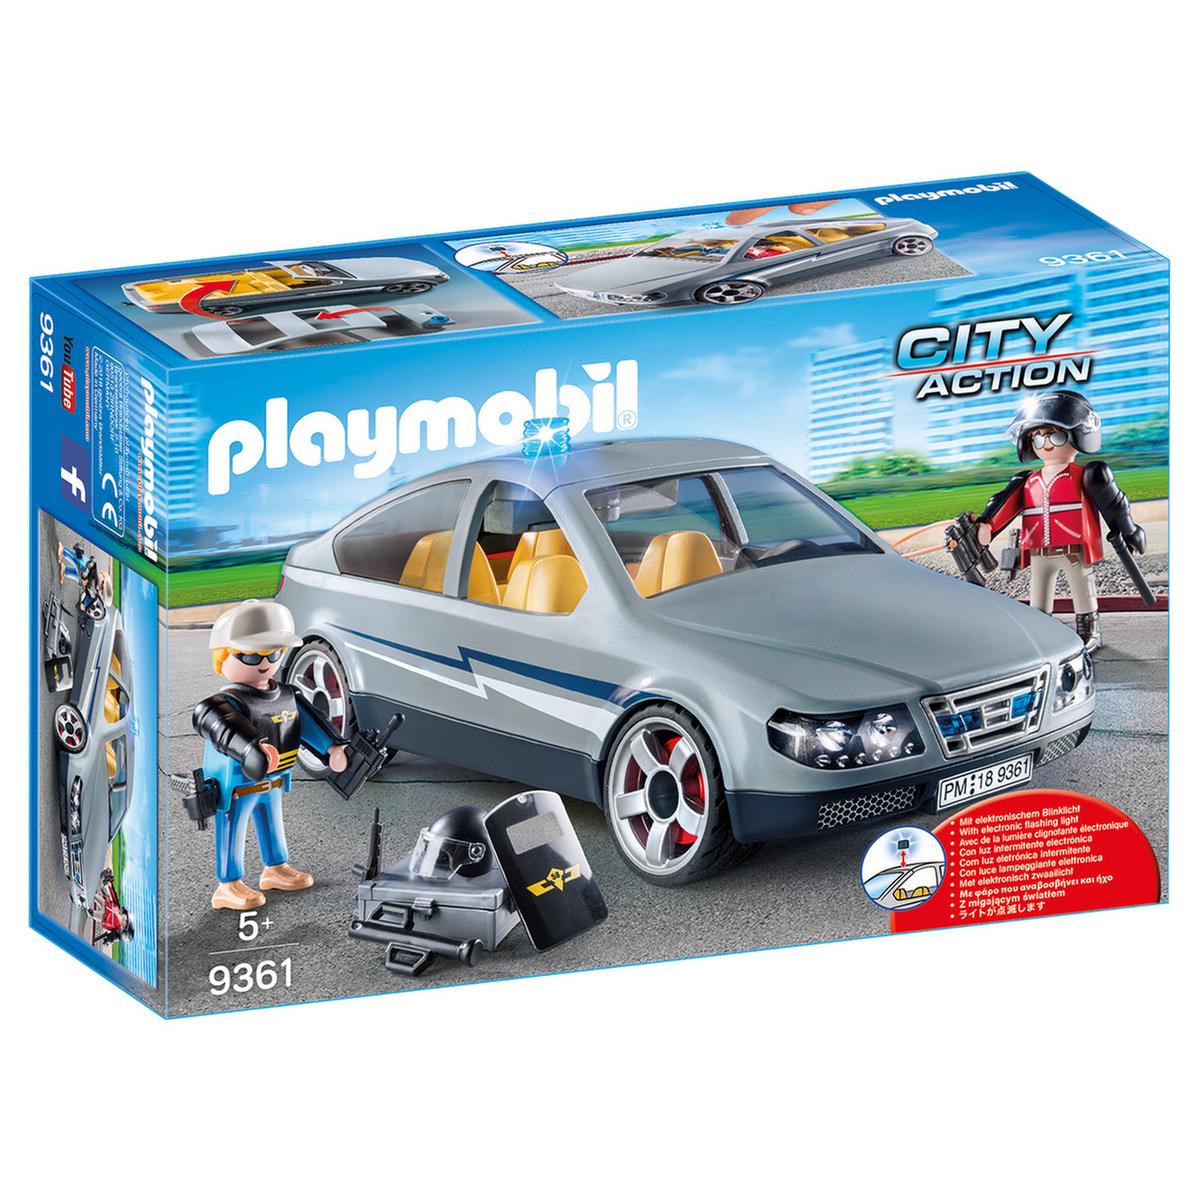 Playmobil - Coche Civil de las Fuerzas Especiales - 9361 | City Action  Policia | Toys"R"Us España